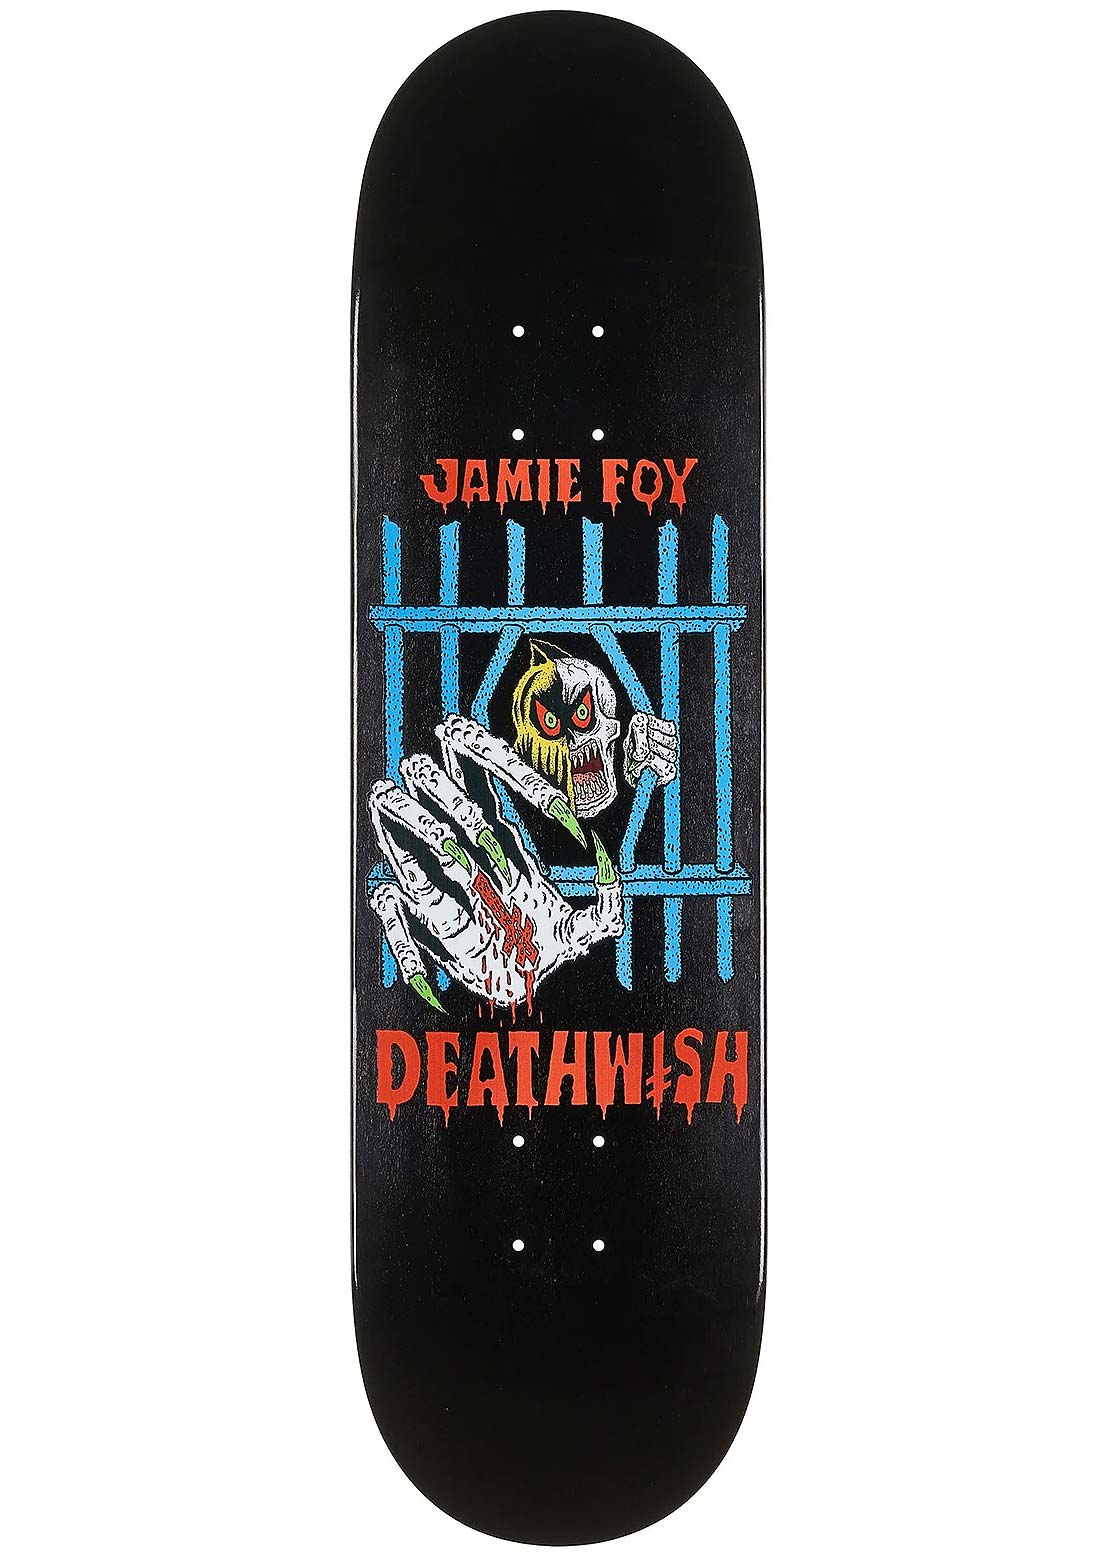 Deathwish Foy Deathwitch Trials Skateboard Deck